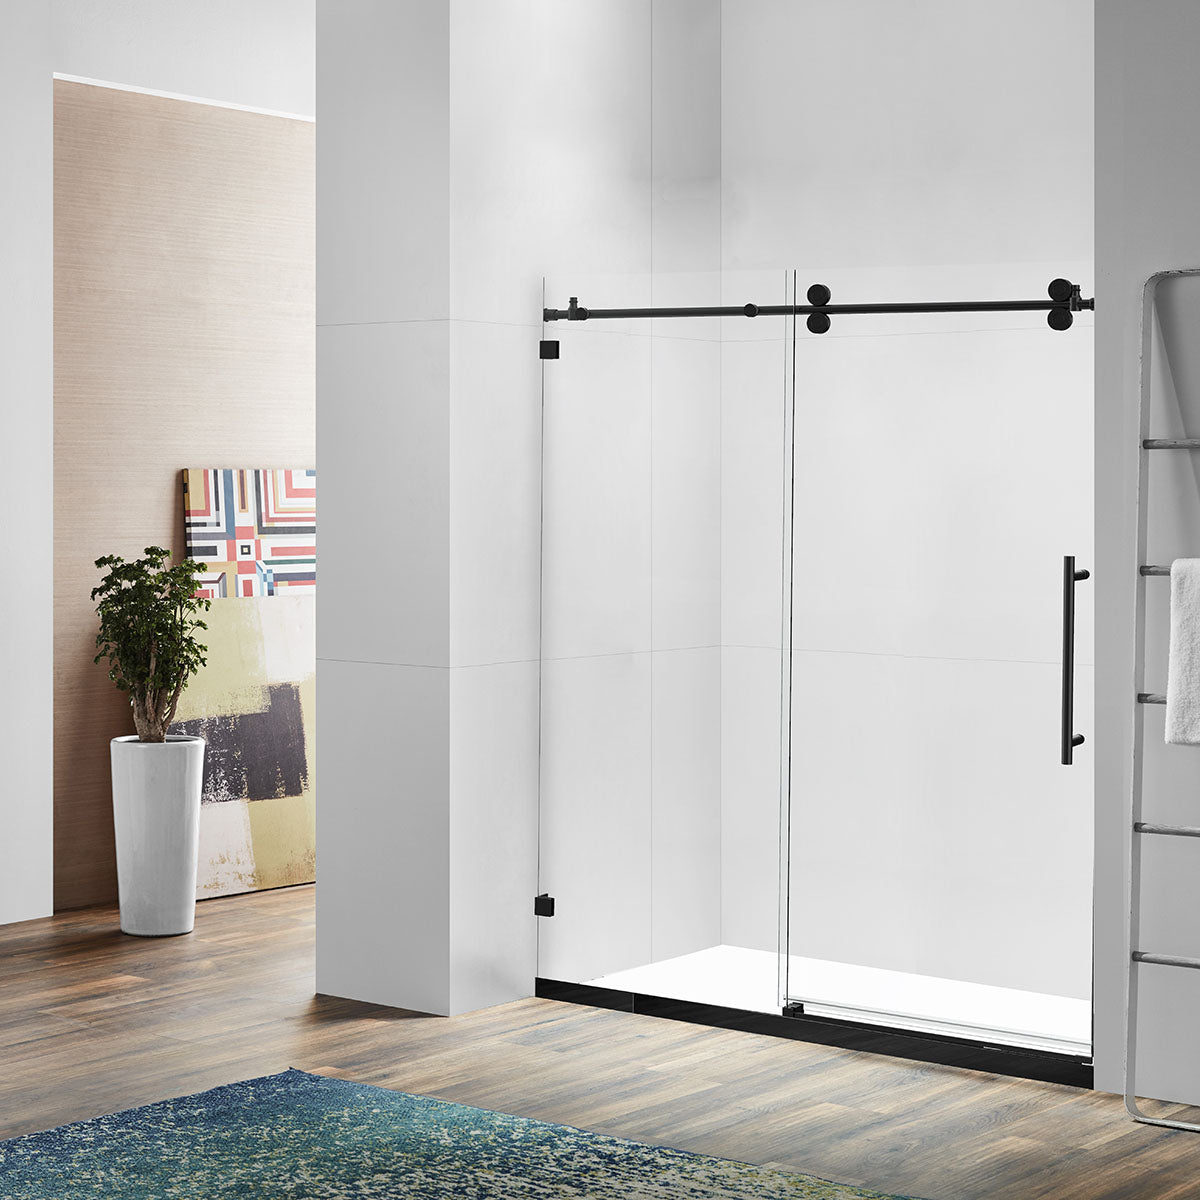 48" BH Series Frameless Single Sliding Shower Door (Matte Black)